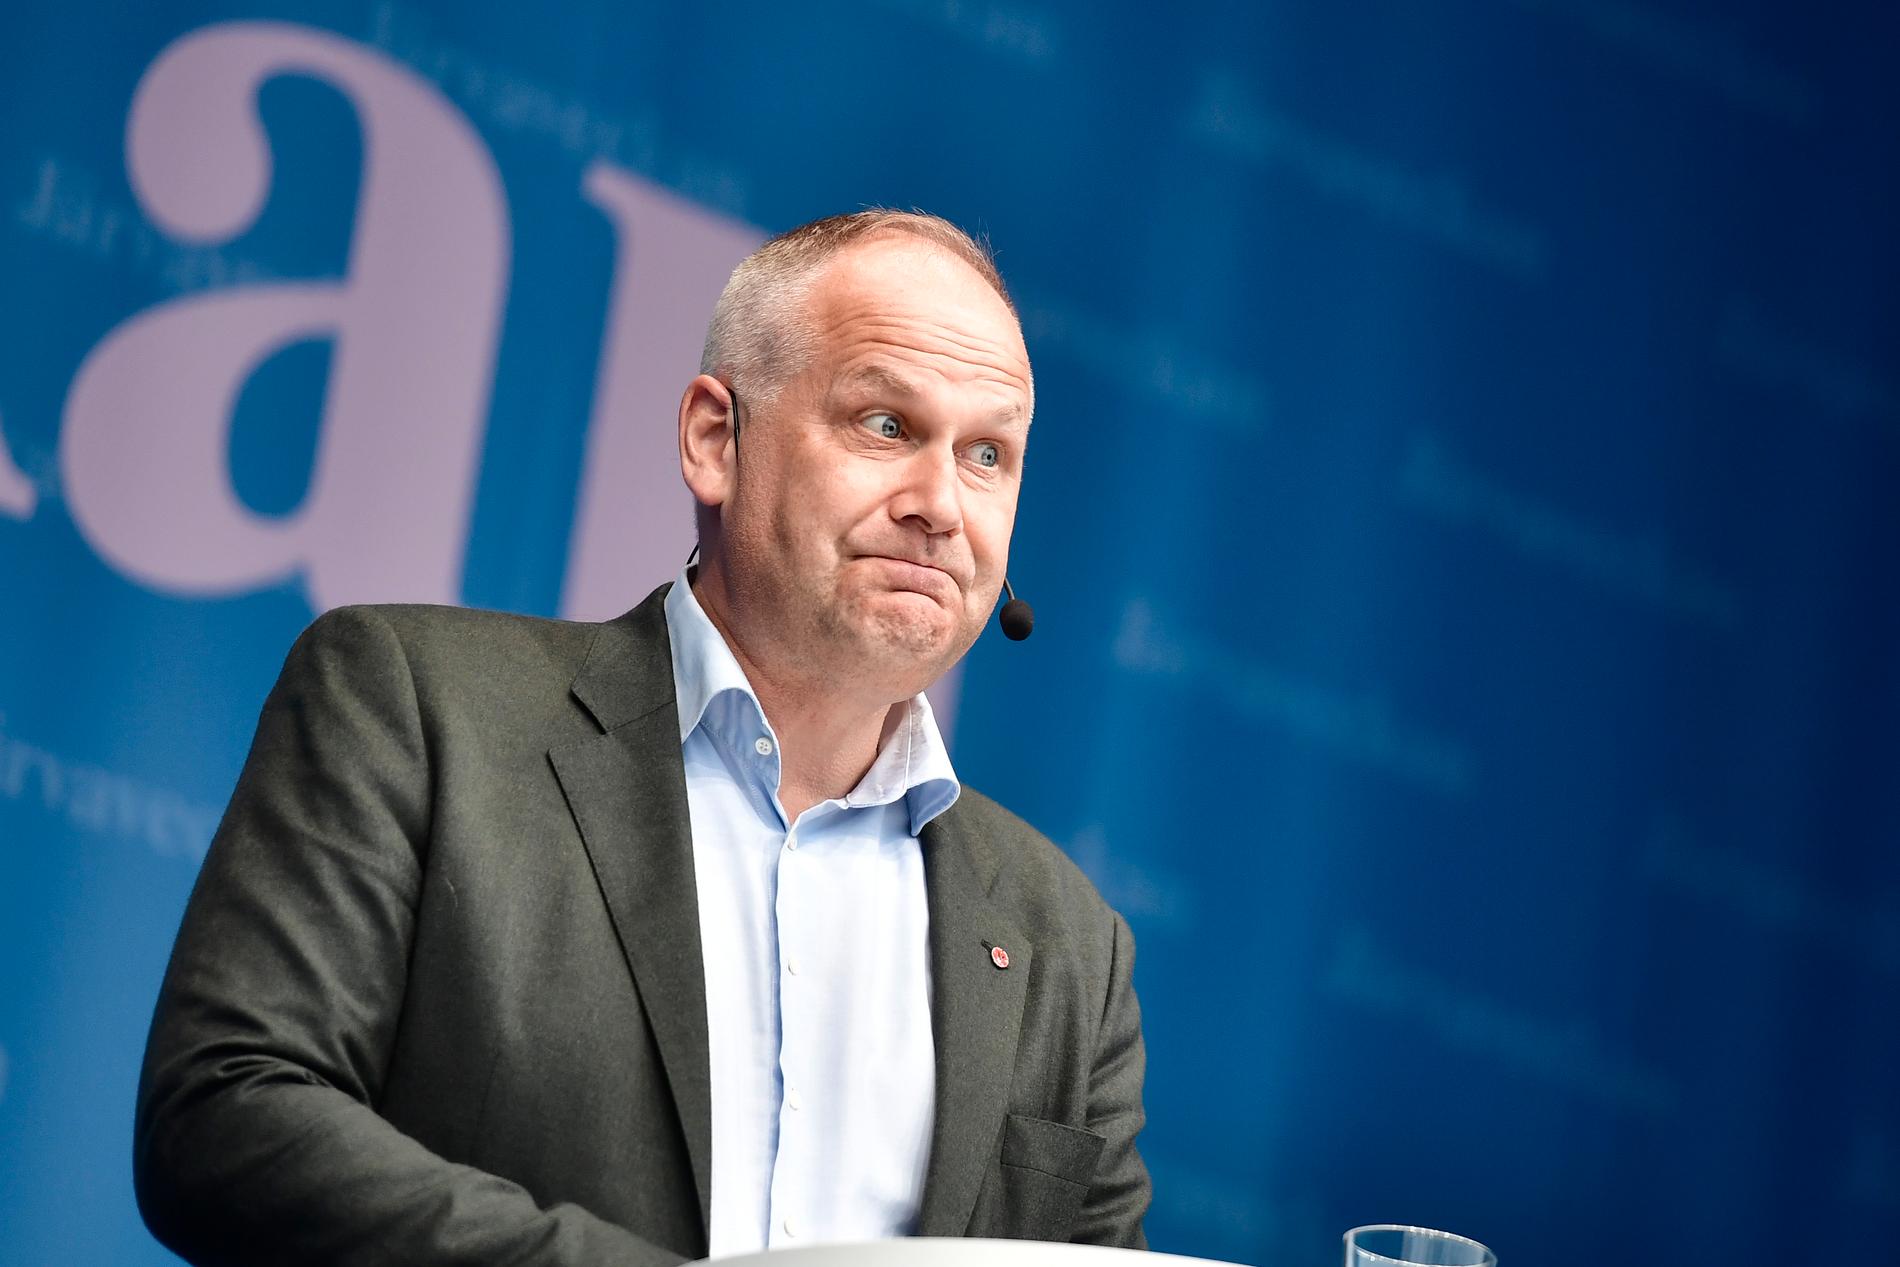 Vänsterledaren Jonas Sjöstedt gick till angrepp mot de borgerliga partierna och Sverigedemokraterna under sitt tal på Järvaveckan.